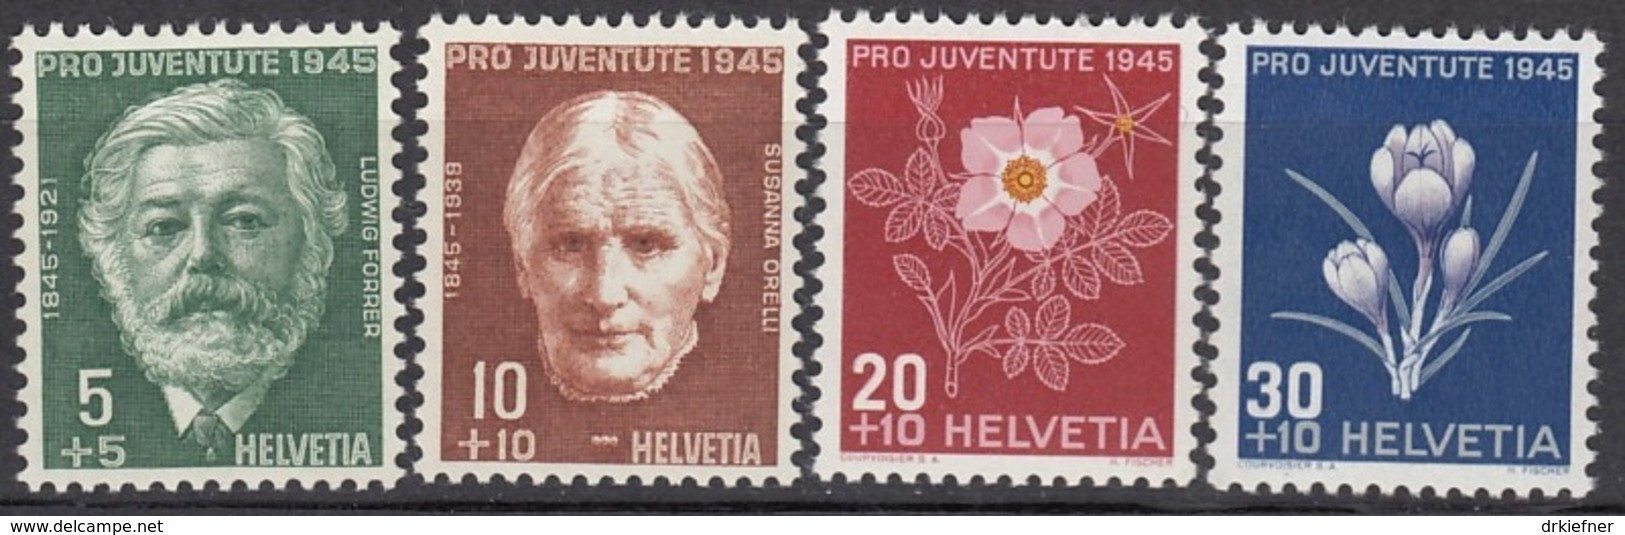 SCHWEIZ  465-468,  Postfrisch **, Pro Juventute 1945, Alpenblumen - Neufs